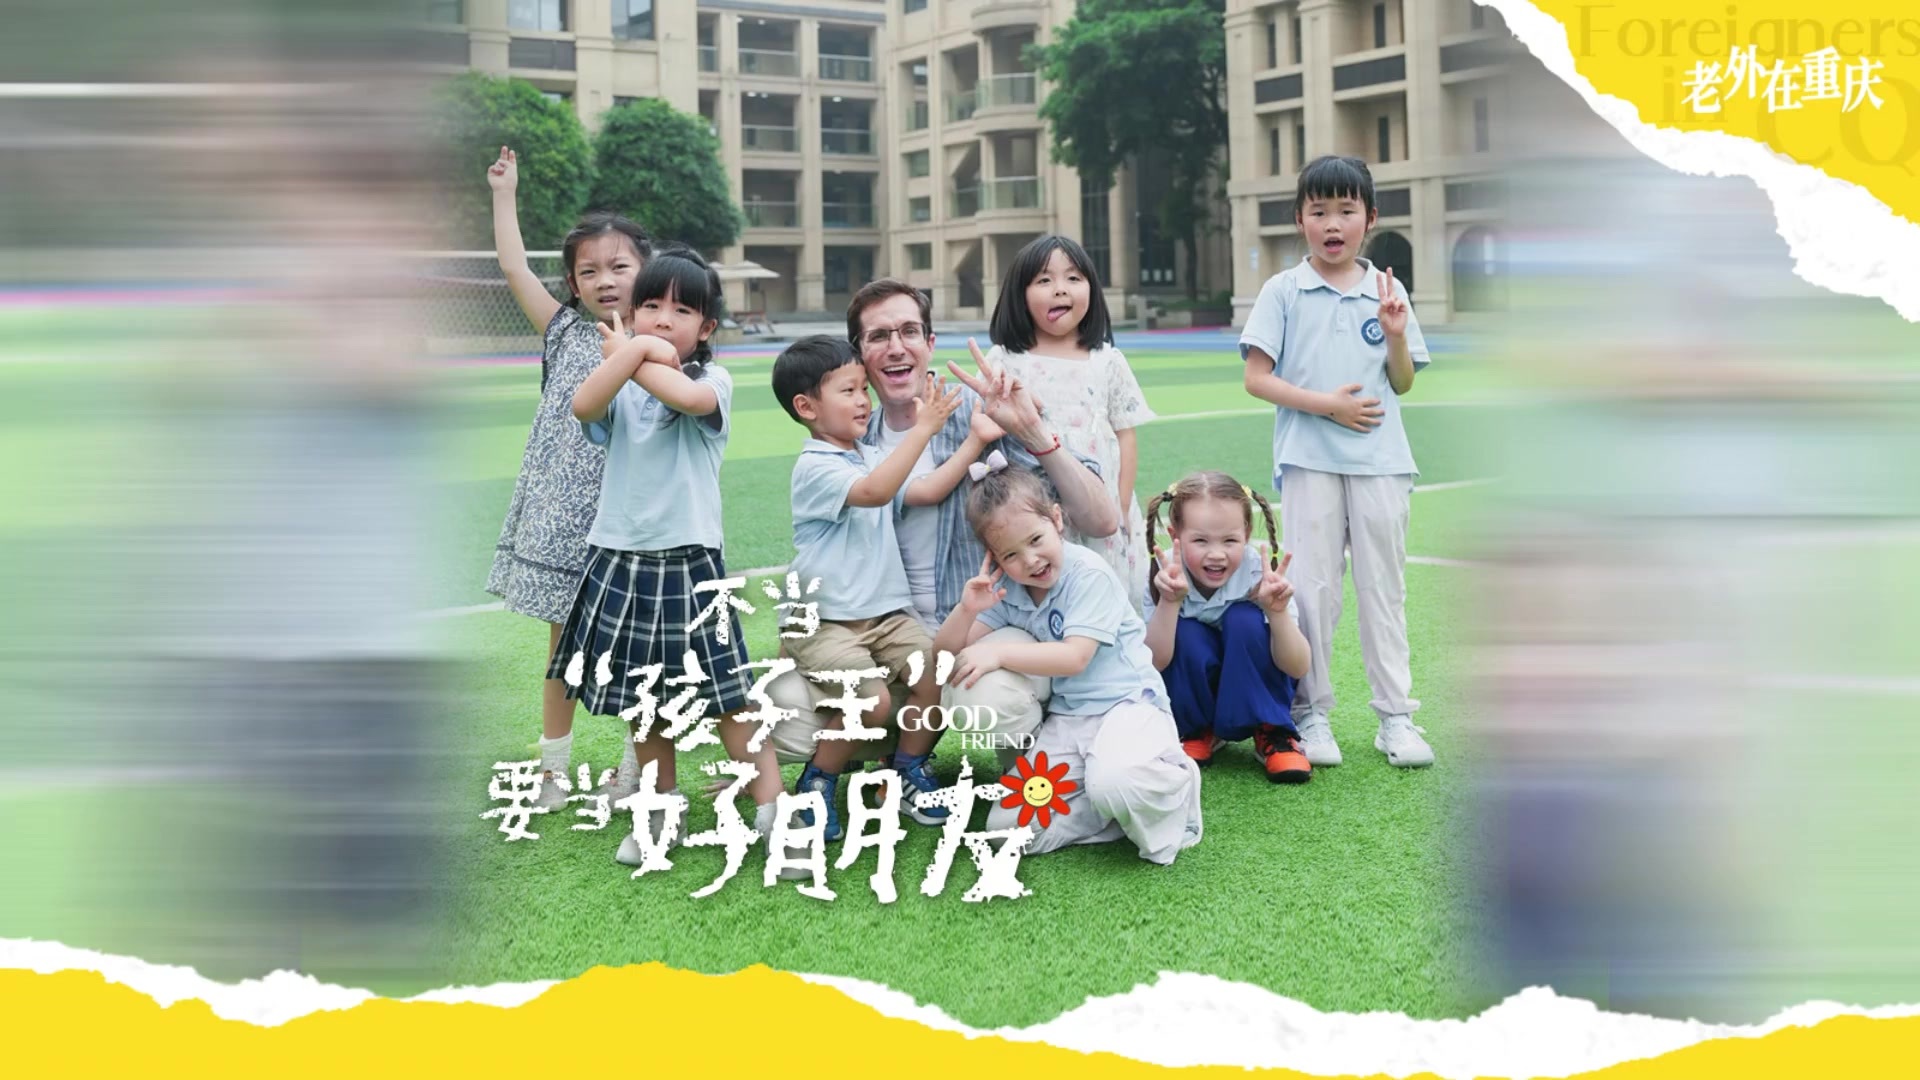 老外在重庆丨当一个能带给孩子们快乐的老师